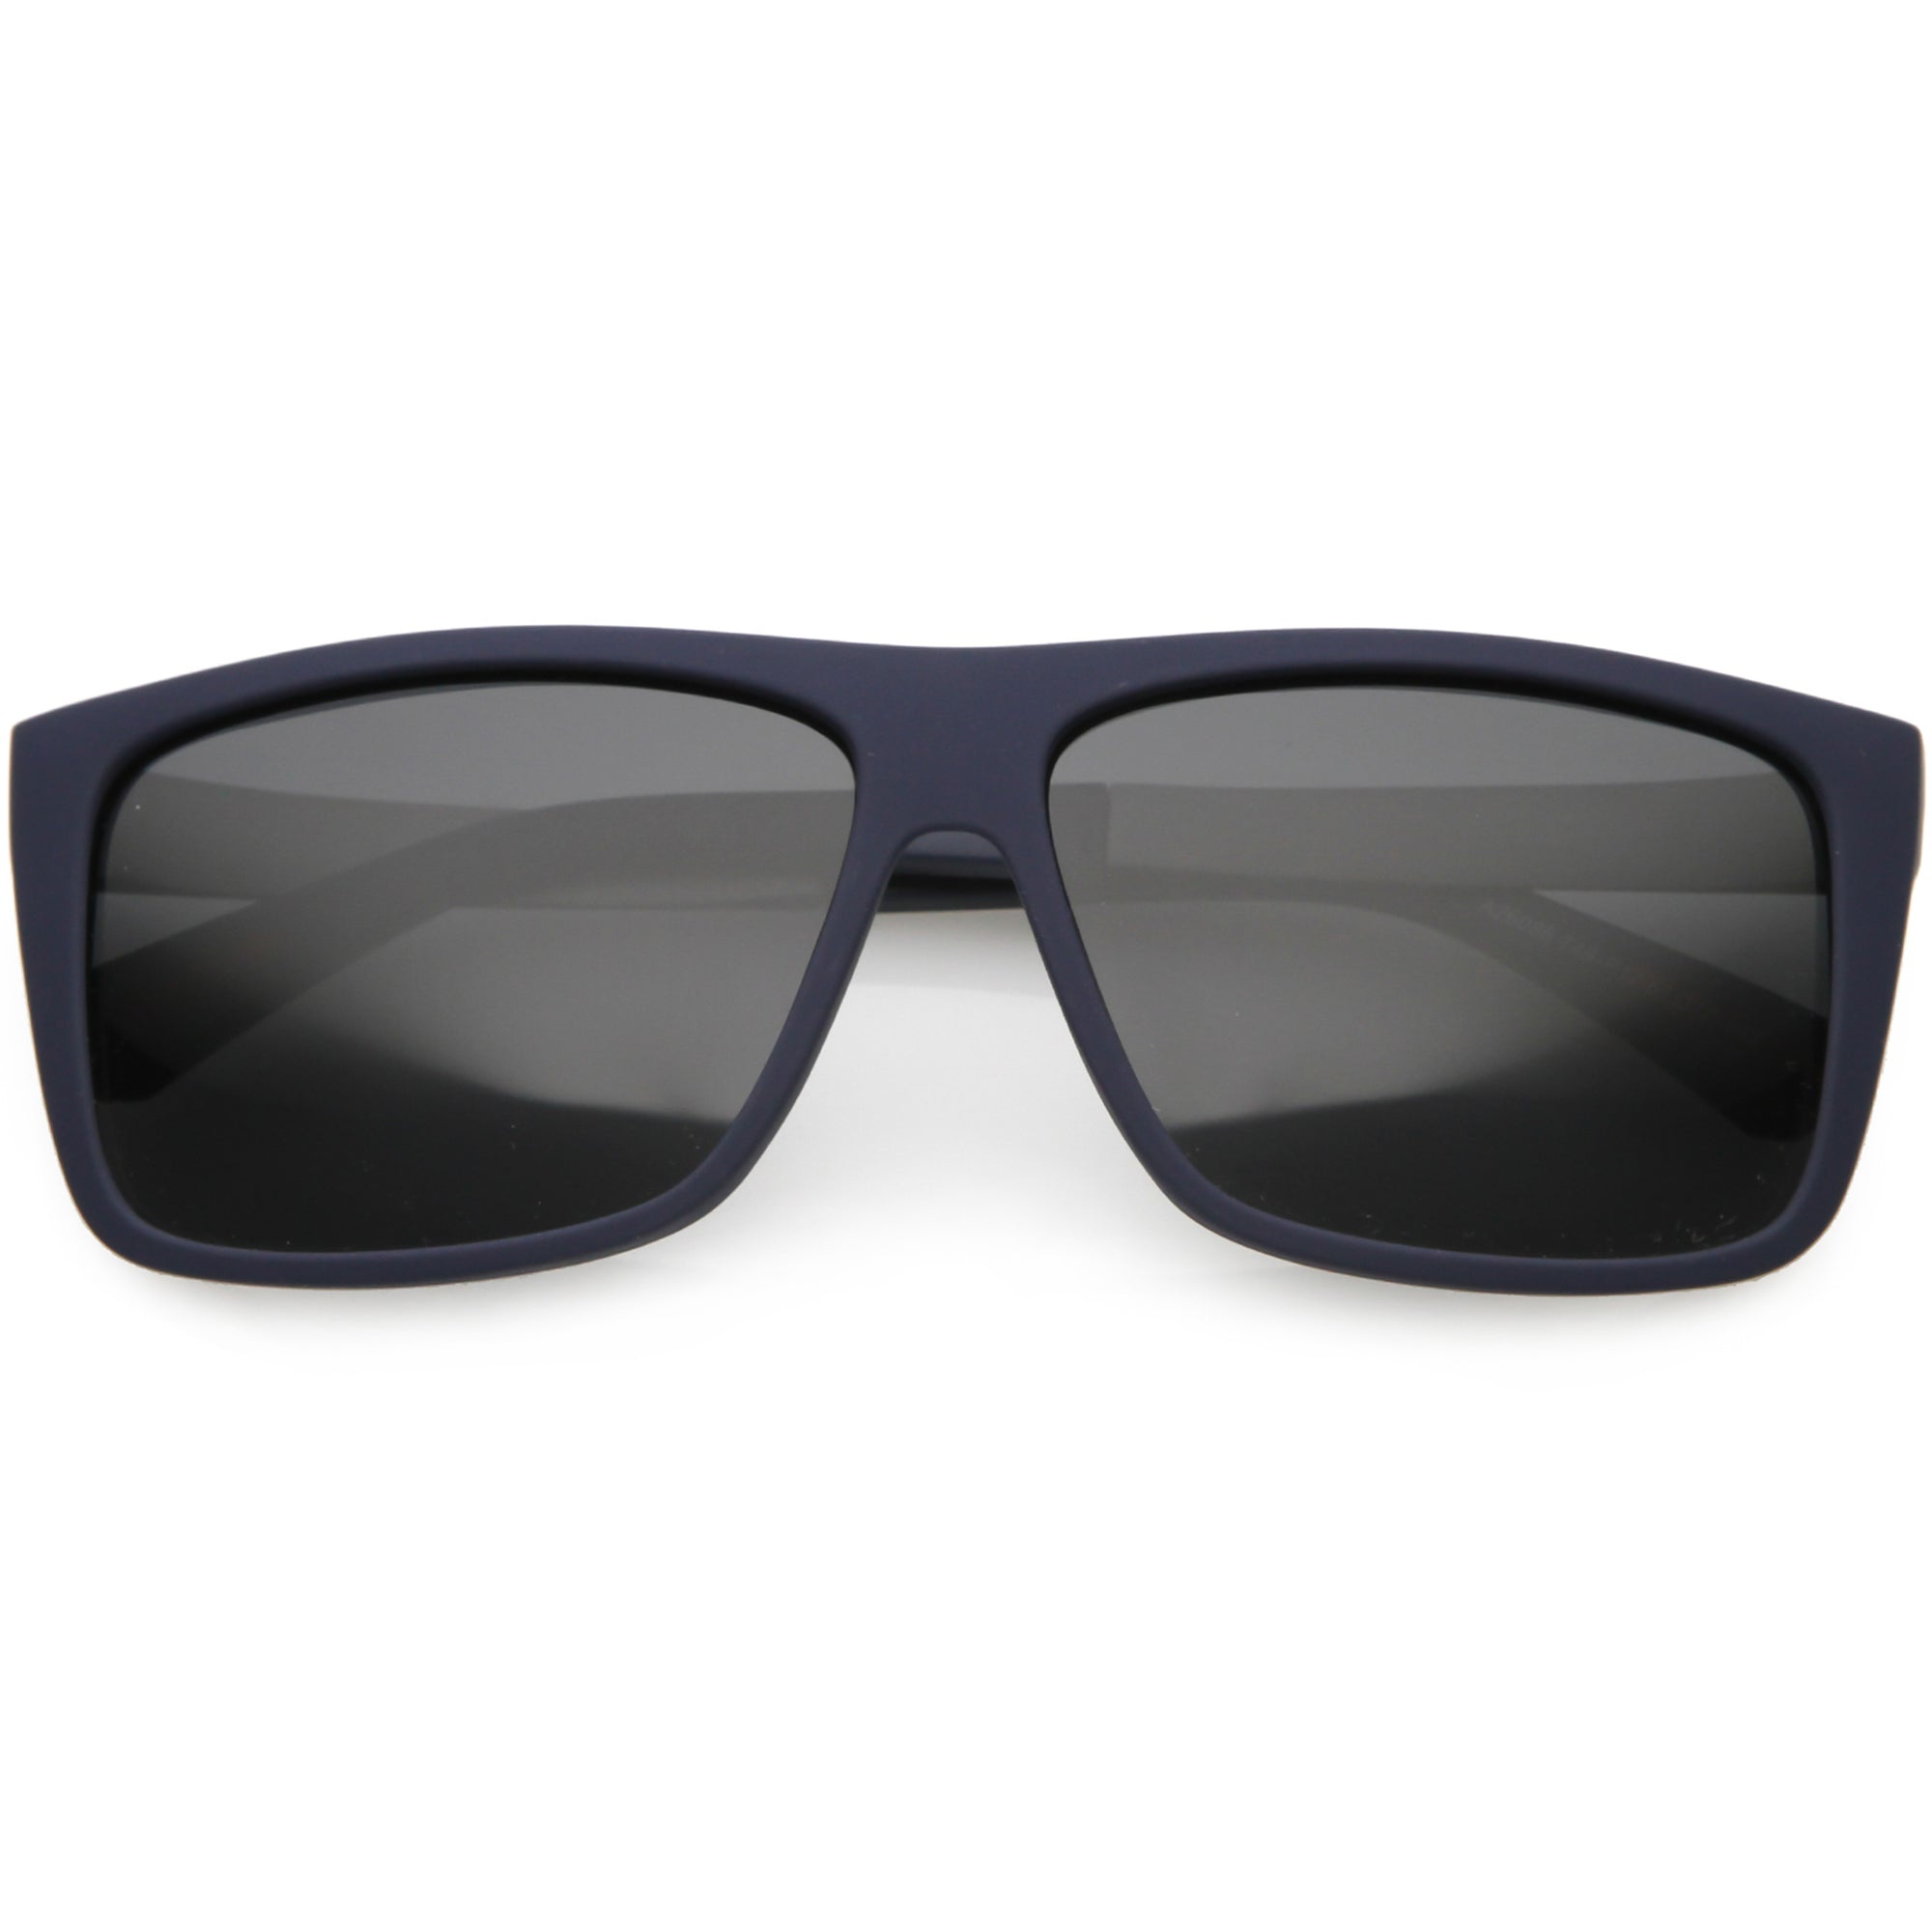 Gafas de sol rectangulares con lentes polarizadas y parte superior plana grande deportiva de acción C890